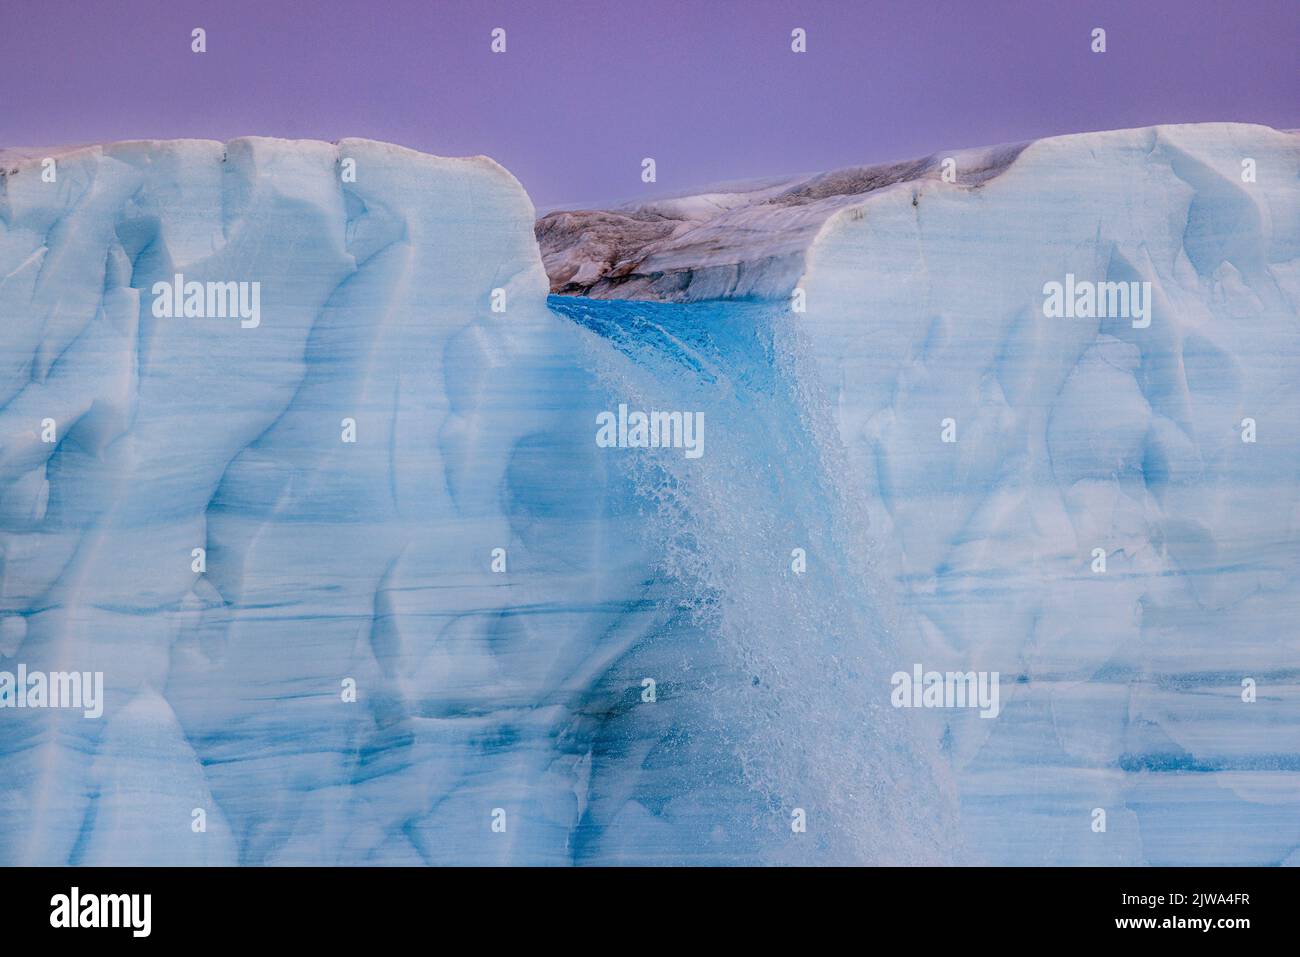 un fiume blu ghiacciato attraversa la calotta di ghiaccio austfonna sul nordaustlandet e si schianta verso il mare, sulla scogliera di ghiaccio a picco, come un'enorme cascata Foto Stock